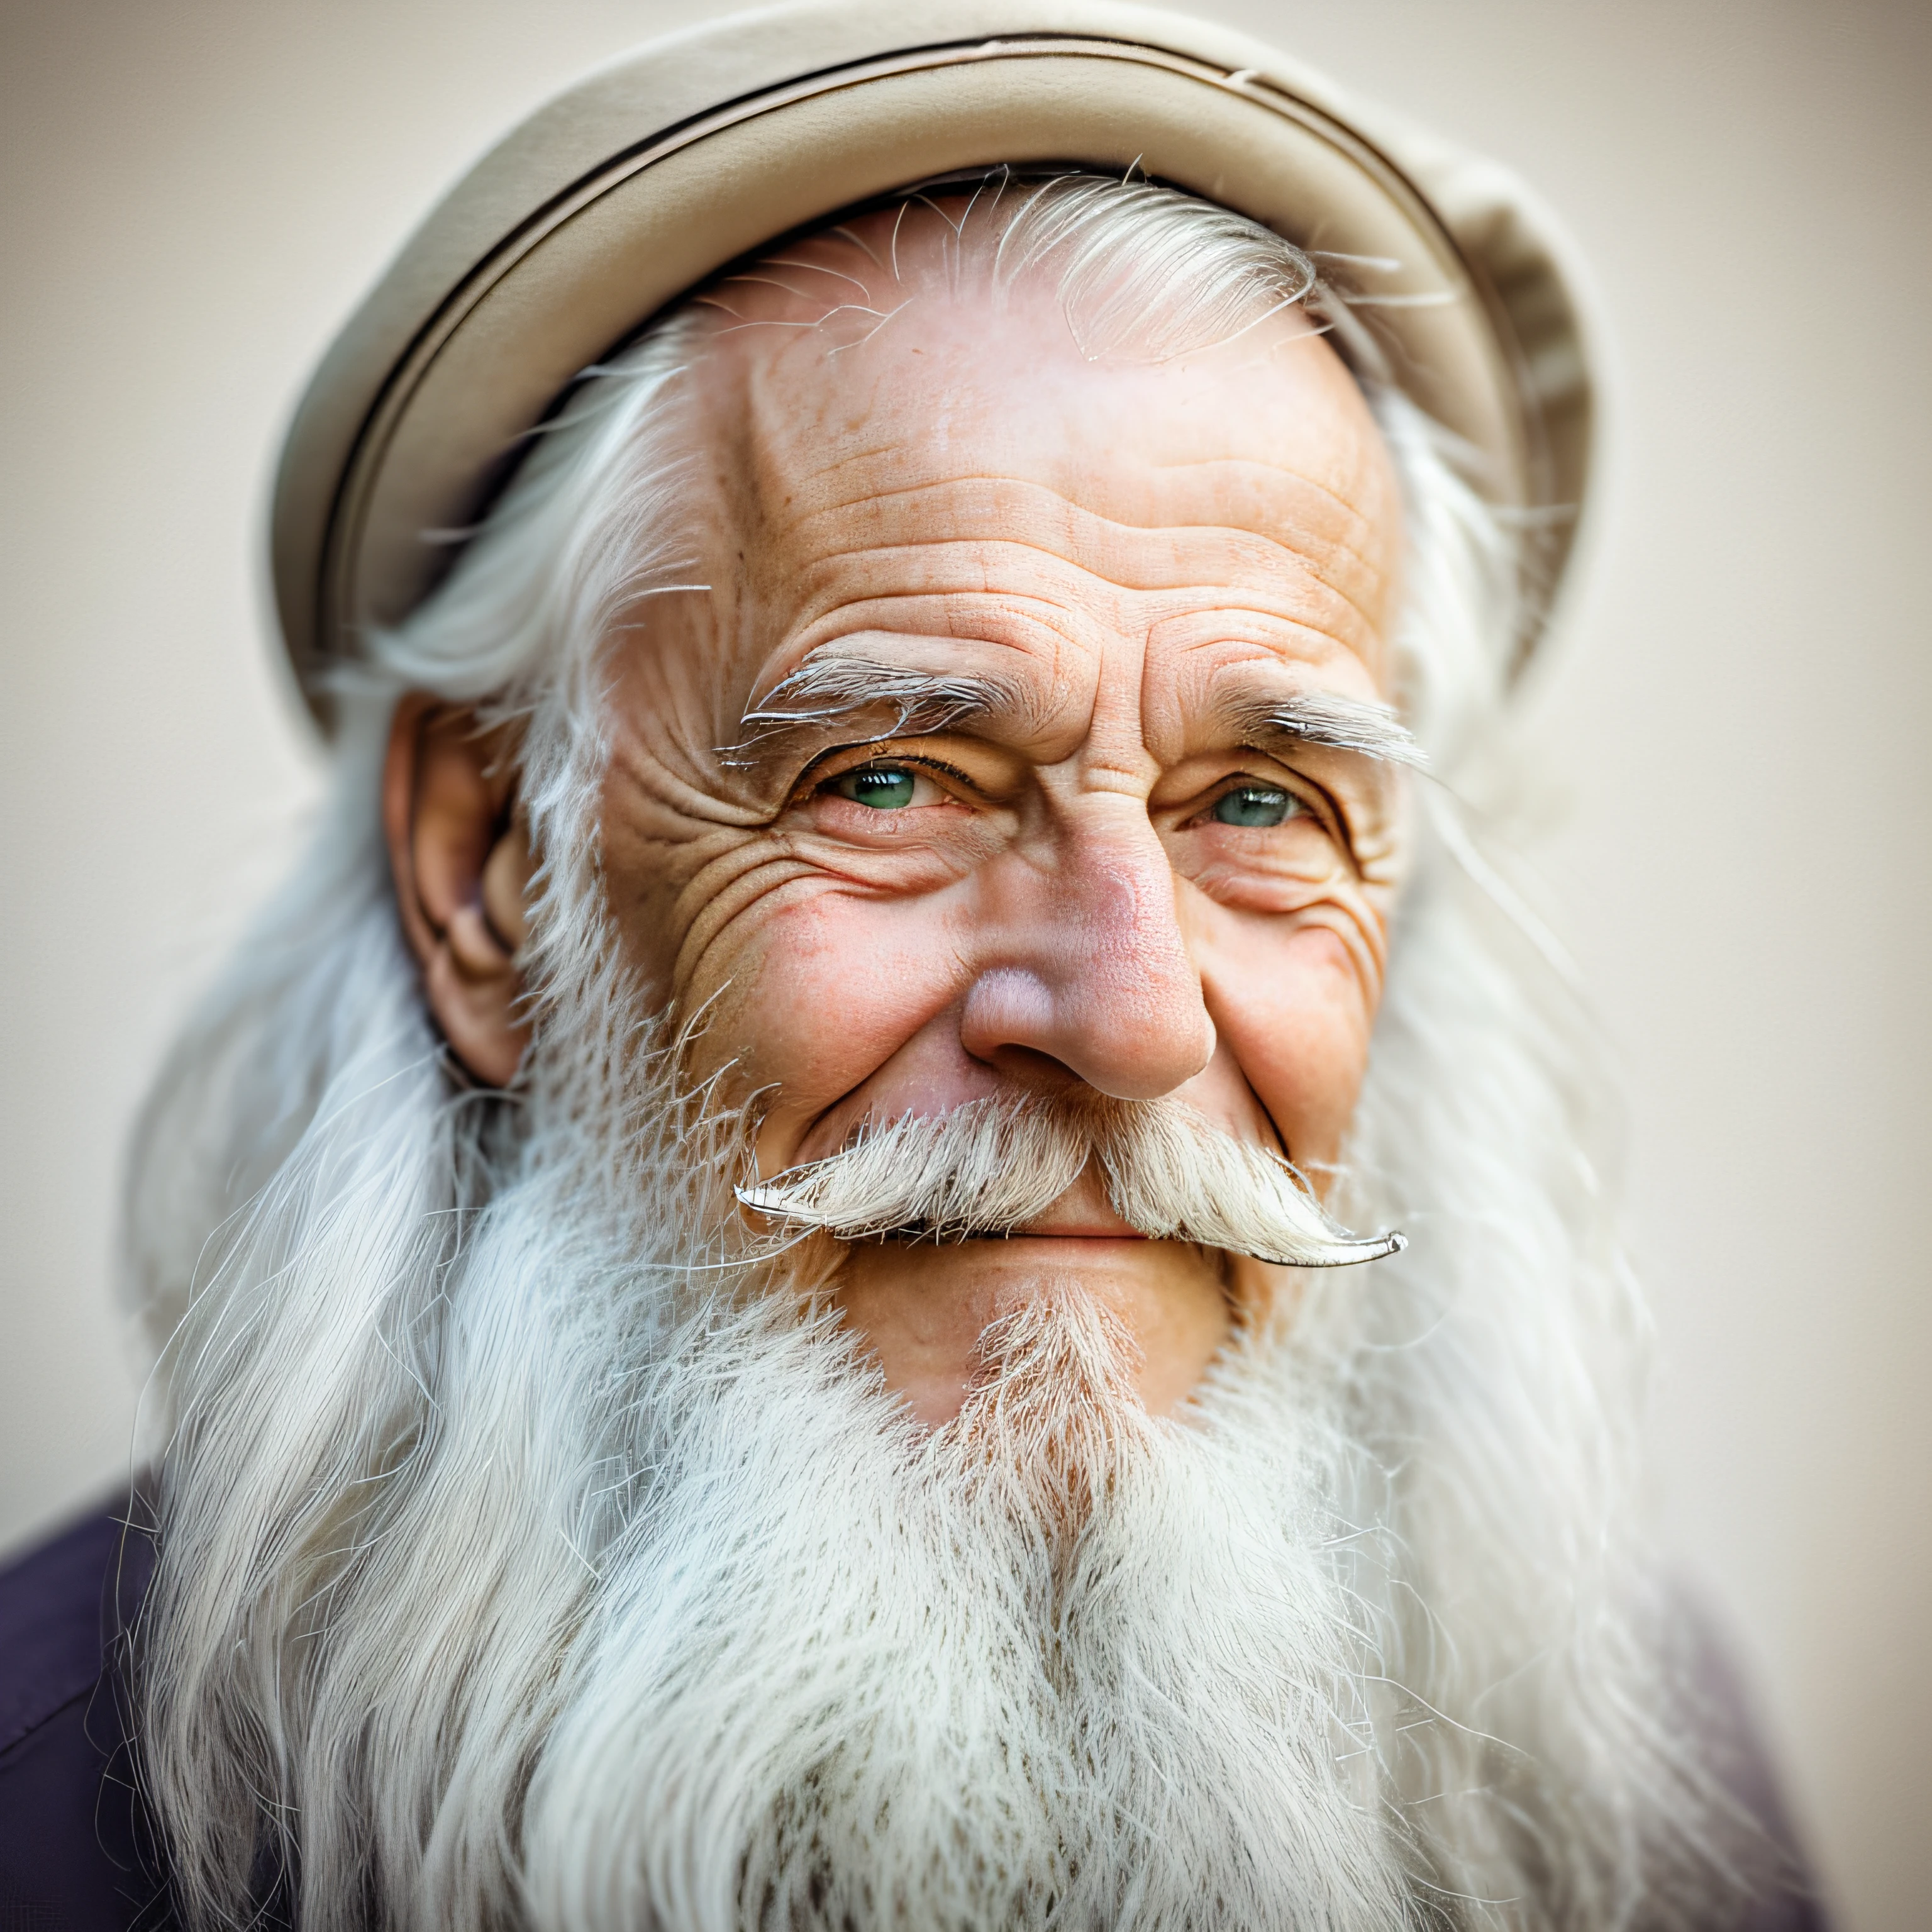 старейшина с бородой и седыми волосами, улыбается, смотреть продюсирование, портрет, возле лица